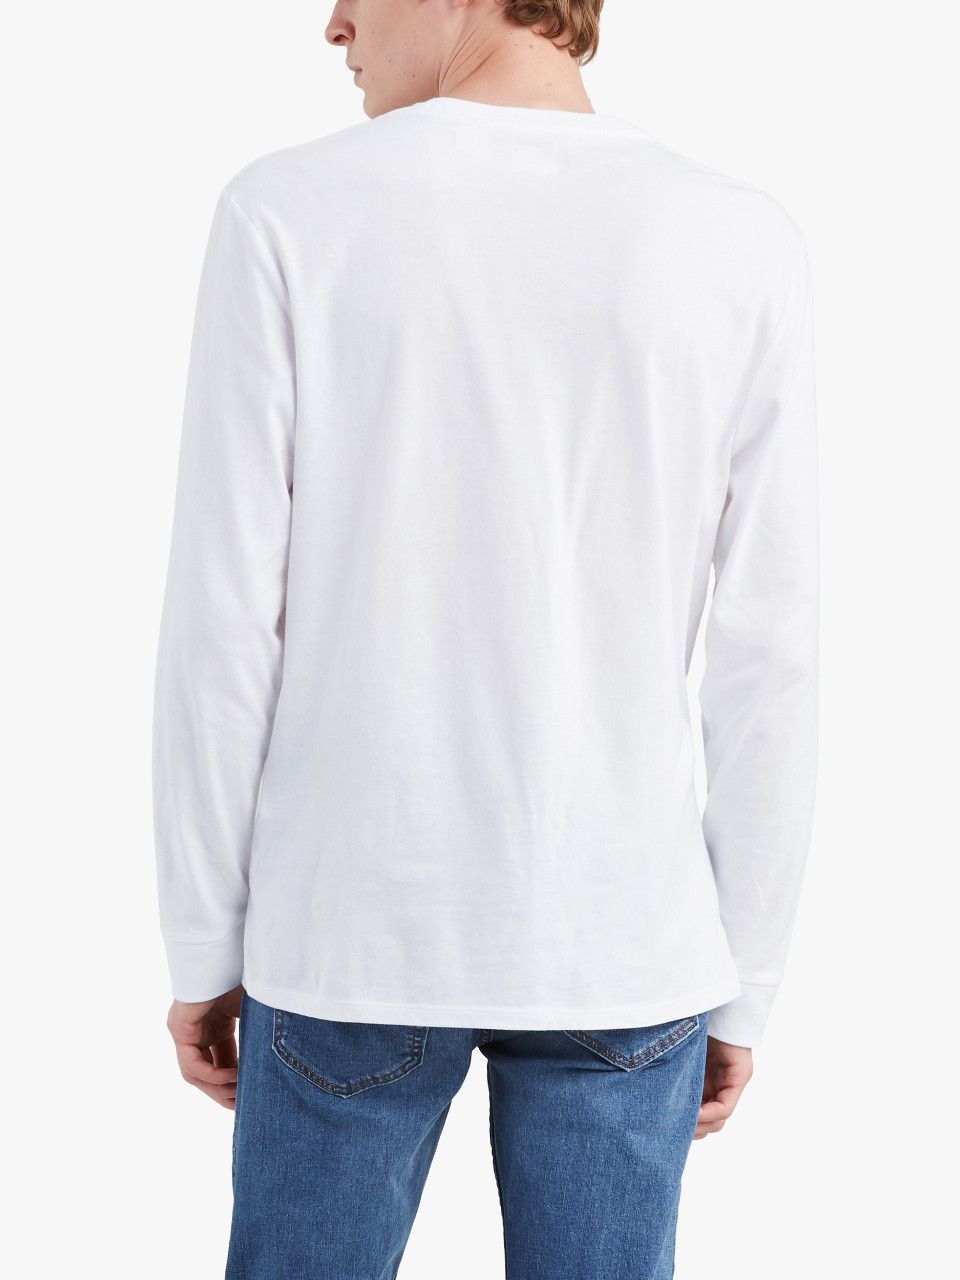 Levi's Housemark Logo T-Shirt, White, S